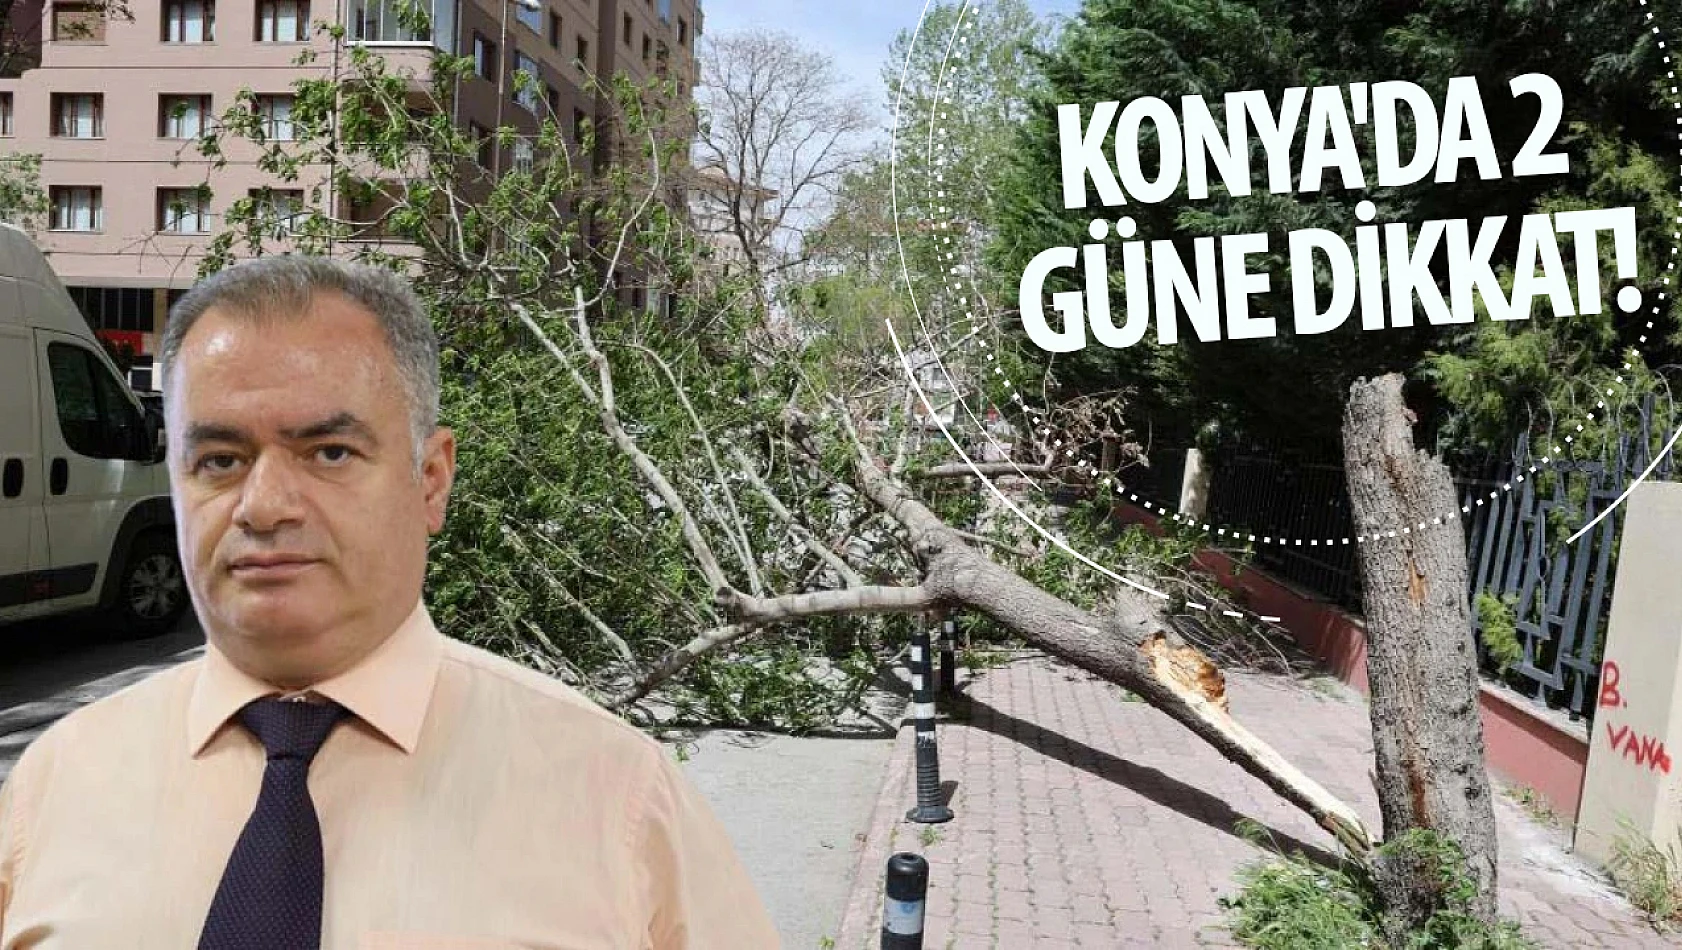 Konya'da 2 güne dikkat! Yetkililer fırtına uyarısı yaptı: Saatte 60 kilometre hızla esecek!